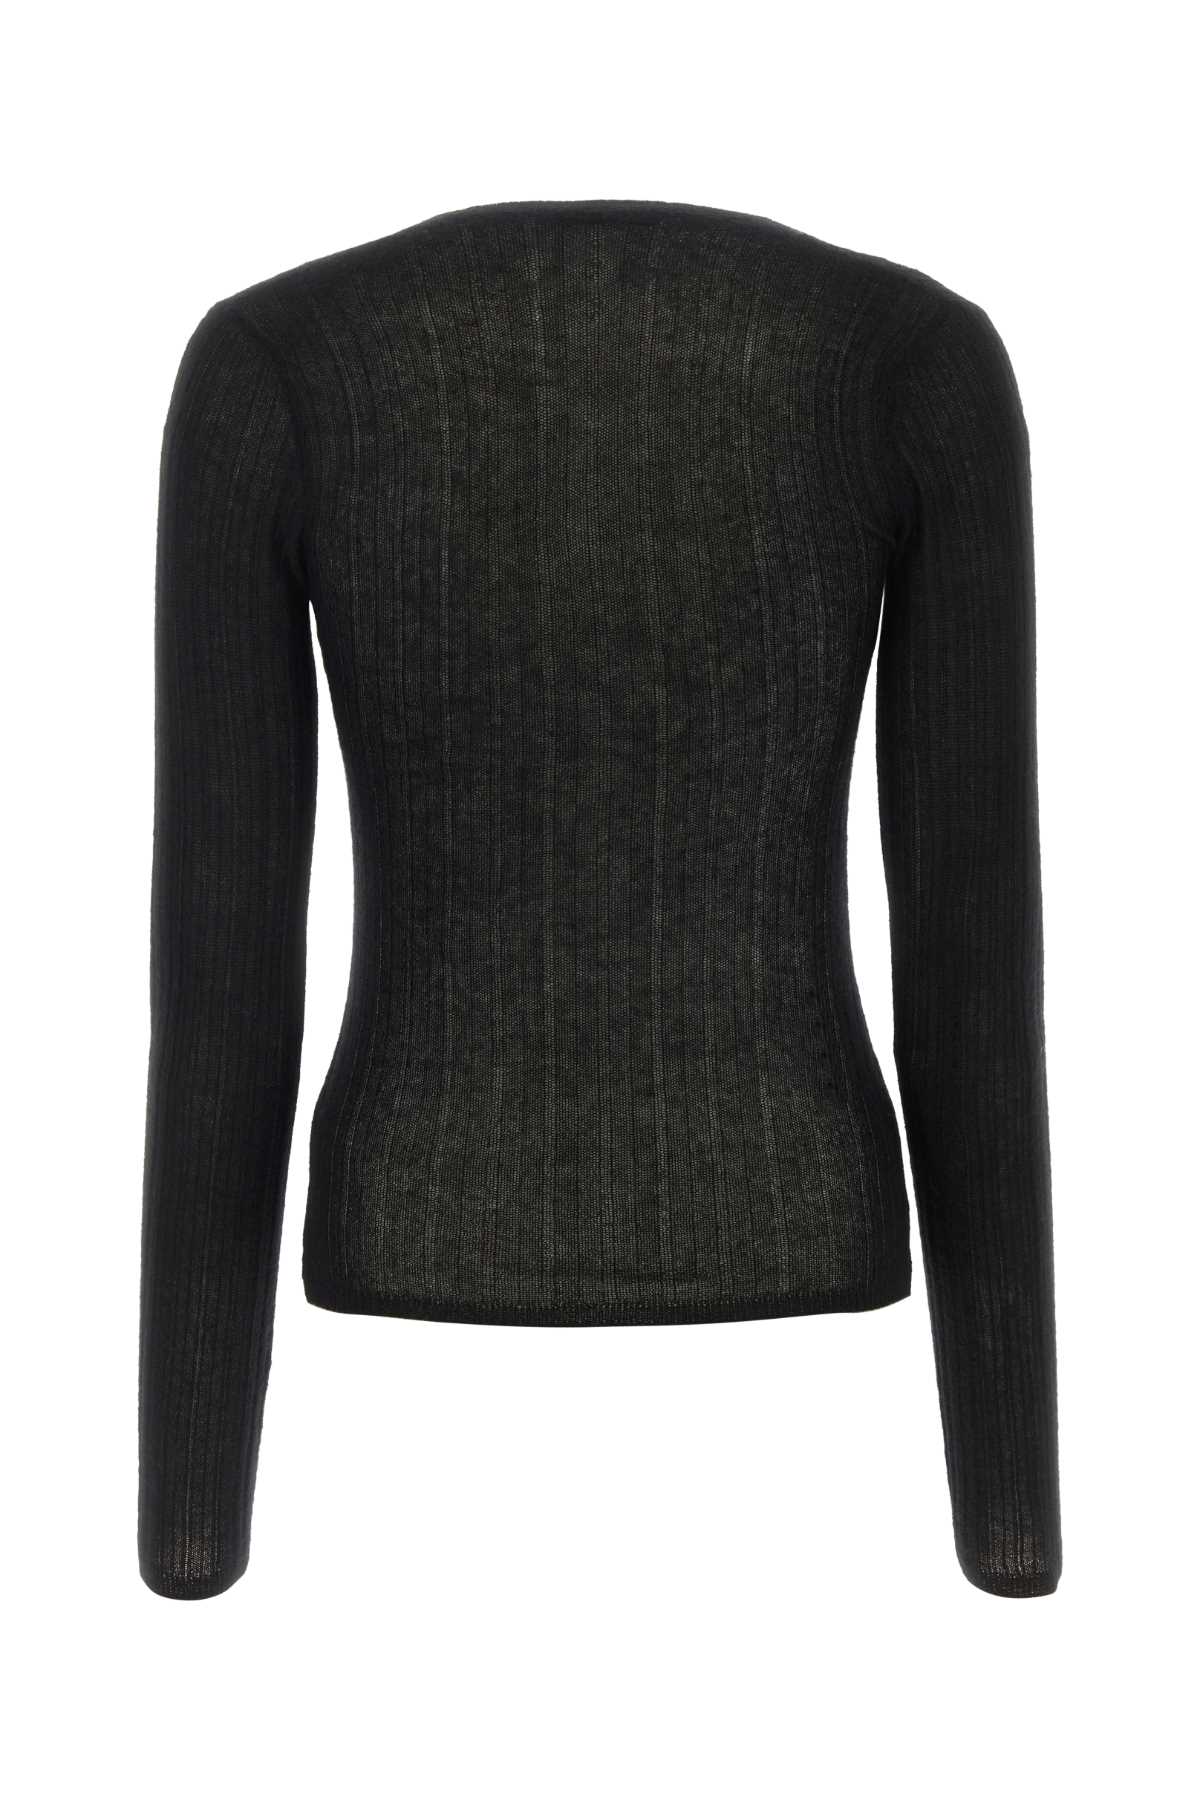 Shop Durazzi Milano Black Cashmere Sweater